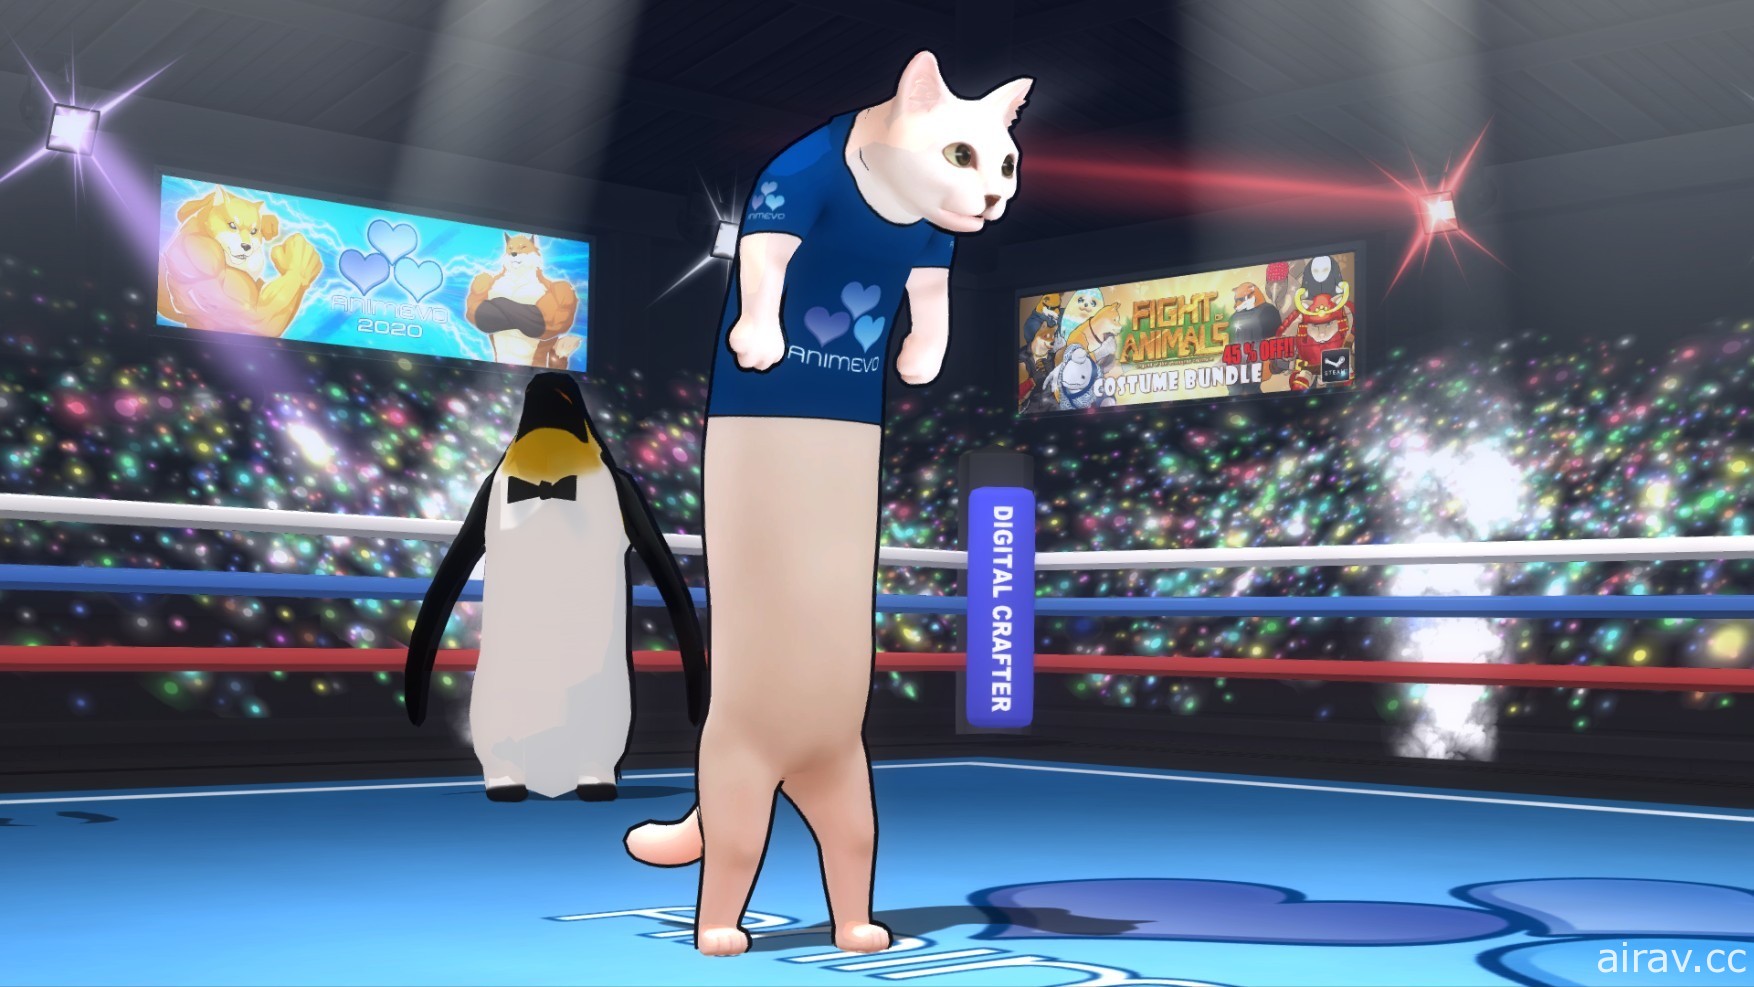 《动物之鬪》被列选为 AnimEvo 比赛项目之一　游戏内推出相关专属服装与场地